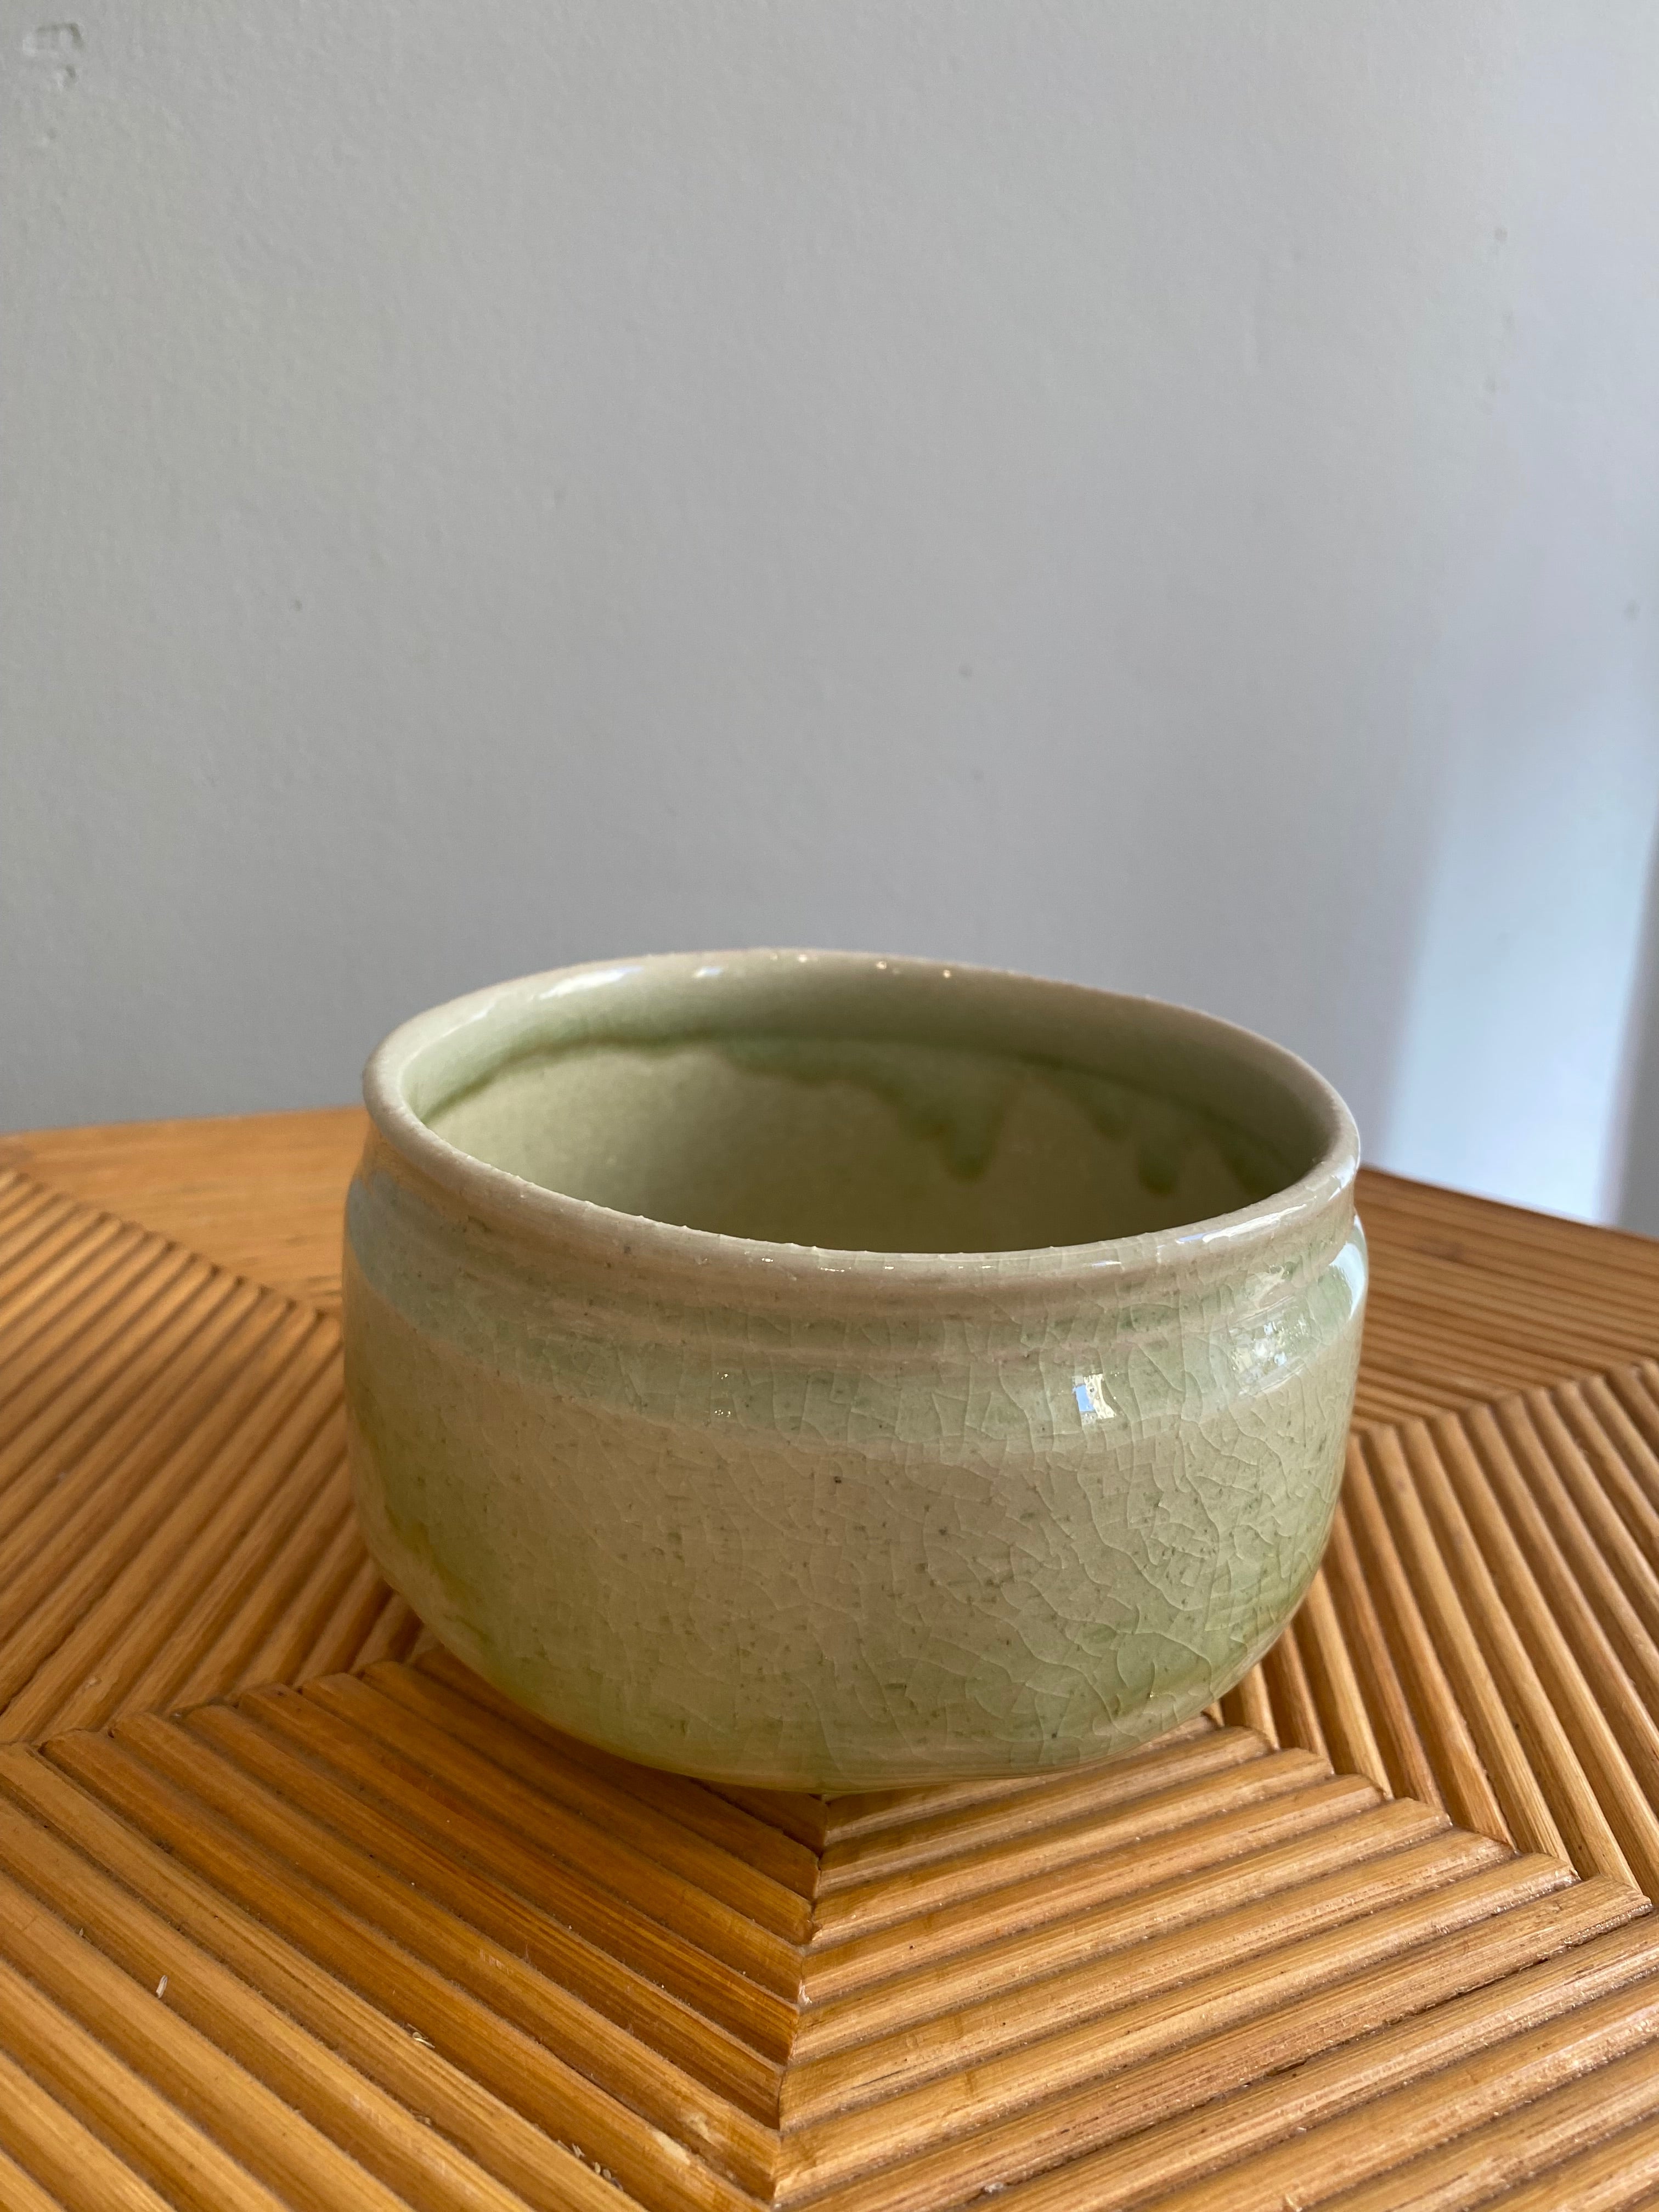 Handmade light green matcha cup